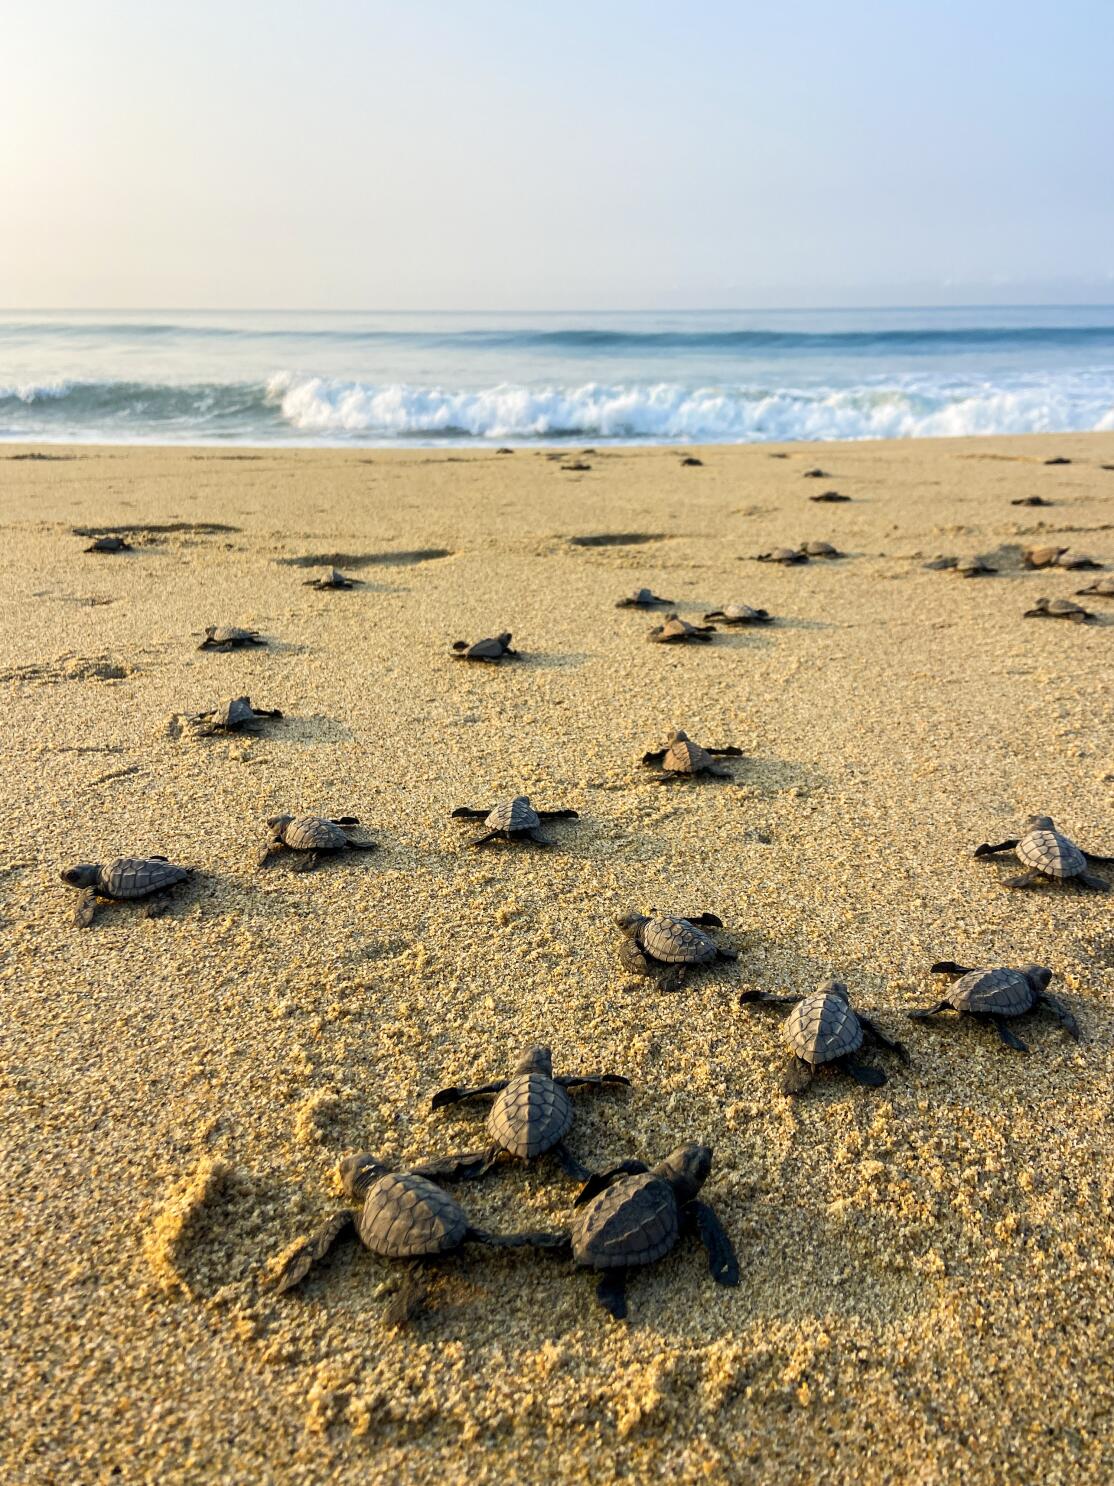 Tiny Turtles Tell Tales - Growing Up in Santa Cruz